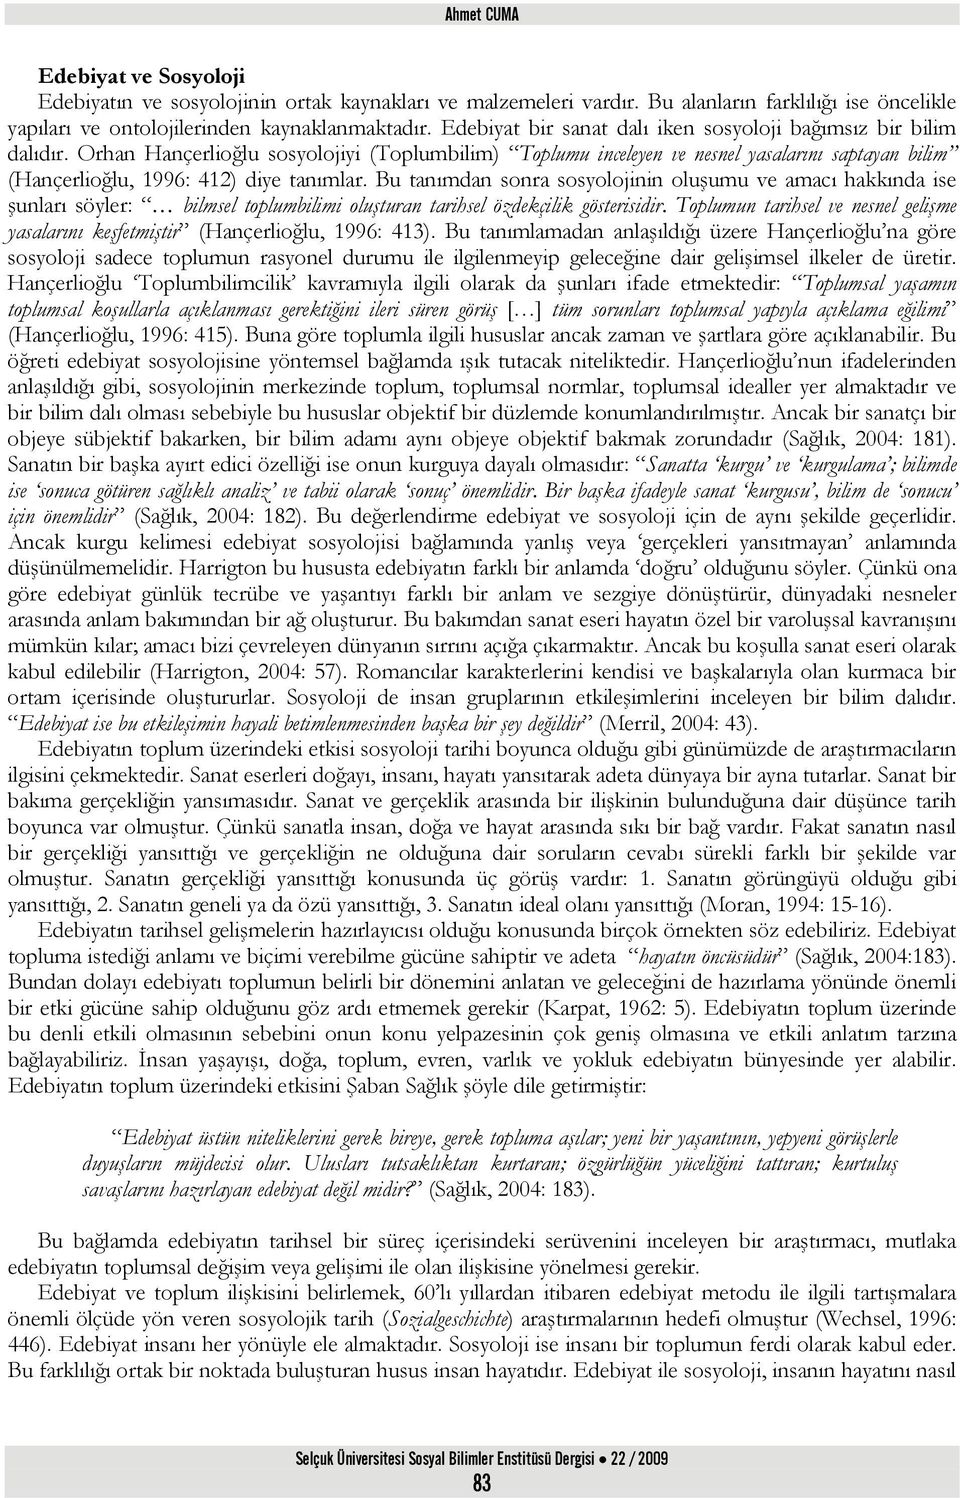 Orhan Hançerlioğlu sosyolojiyi (Toplumbilim) Toplumu inceleyen ve nesnel yasalarını saptayan bilim (Hançerlioğlu, 1996: 412) diye tanımlar.